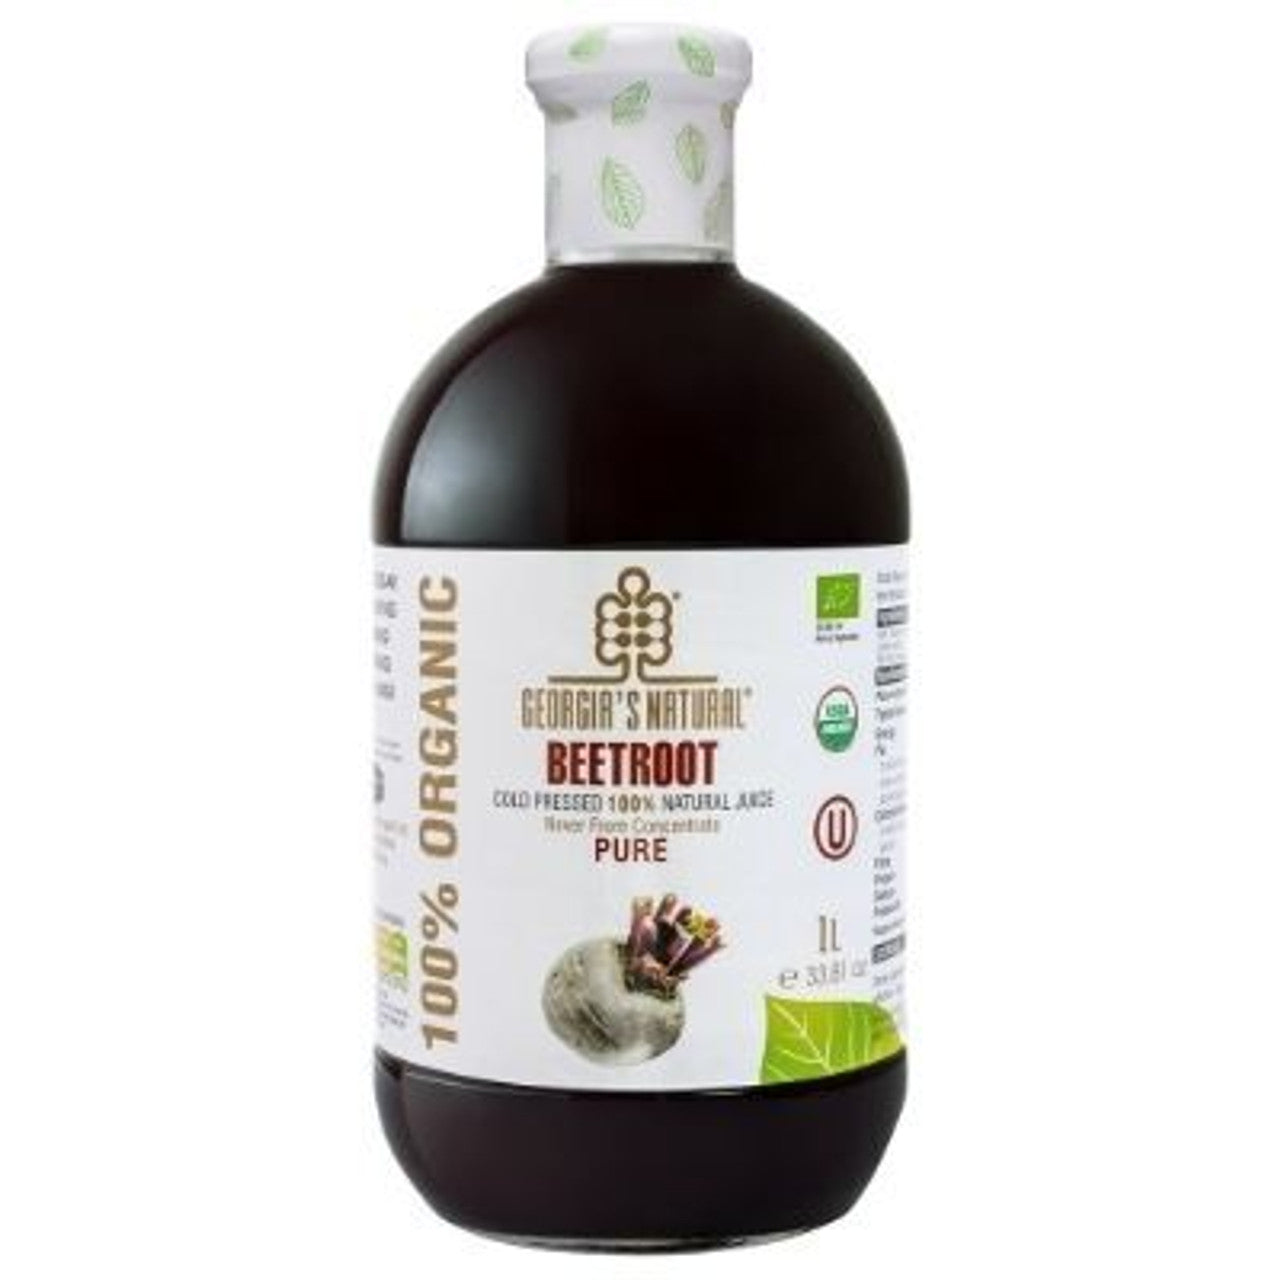 GEORGIA'S NATURAL Organic Beetroot Juice, 1L